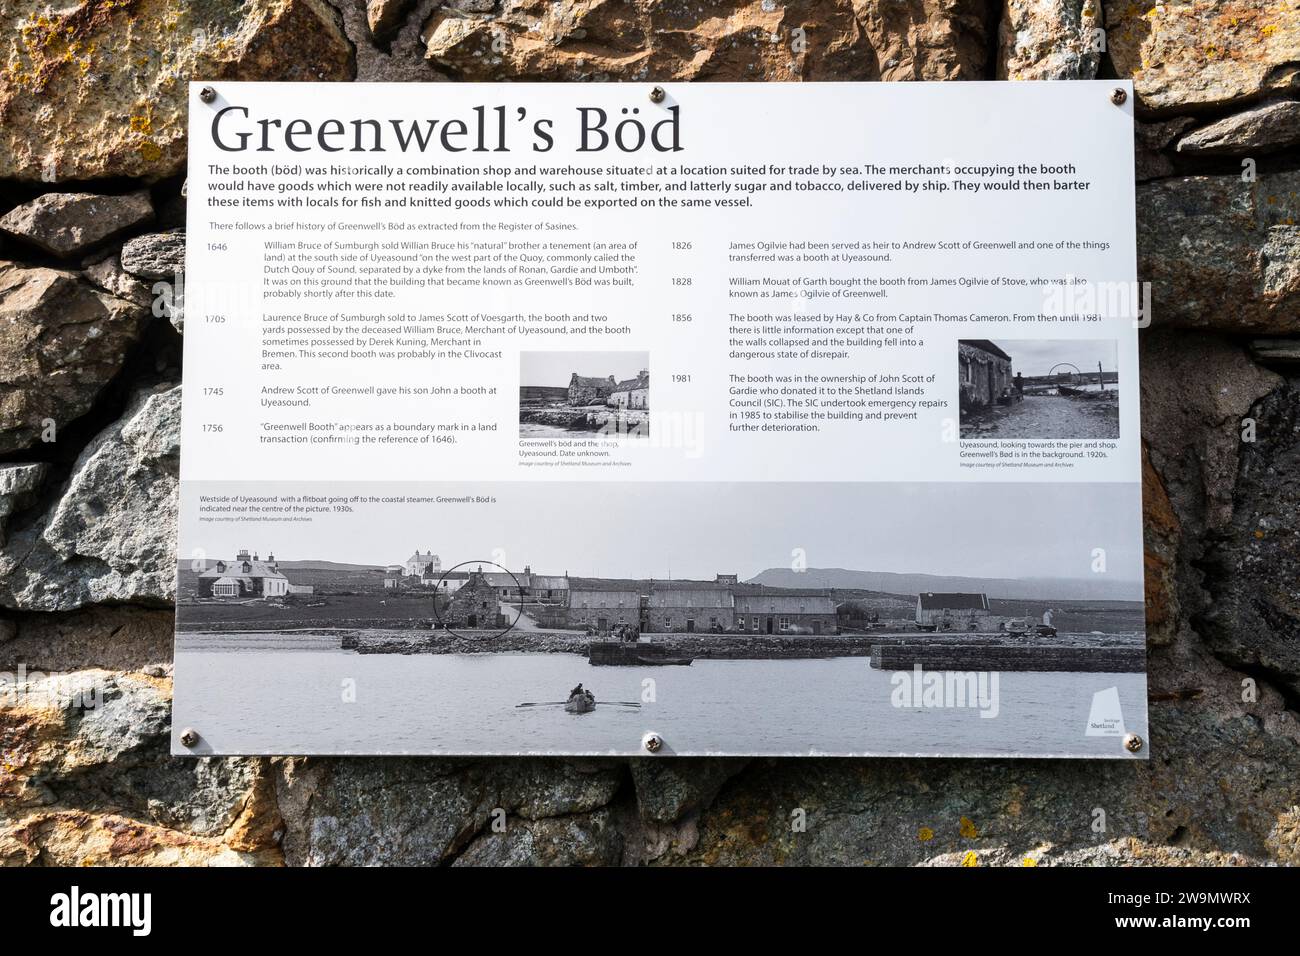 Un segno esplicativo sui resti del BOD di Greenwell, o stand a Uyeasound su Unst. Risale al 1640 ed era un negozio e magazzino anseatico. Foto Stock